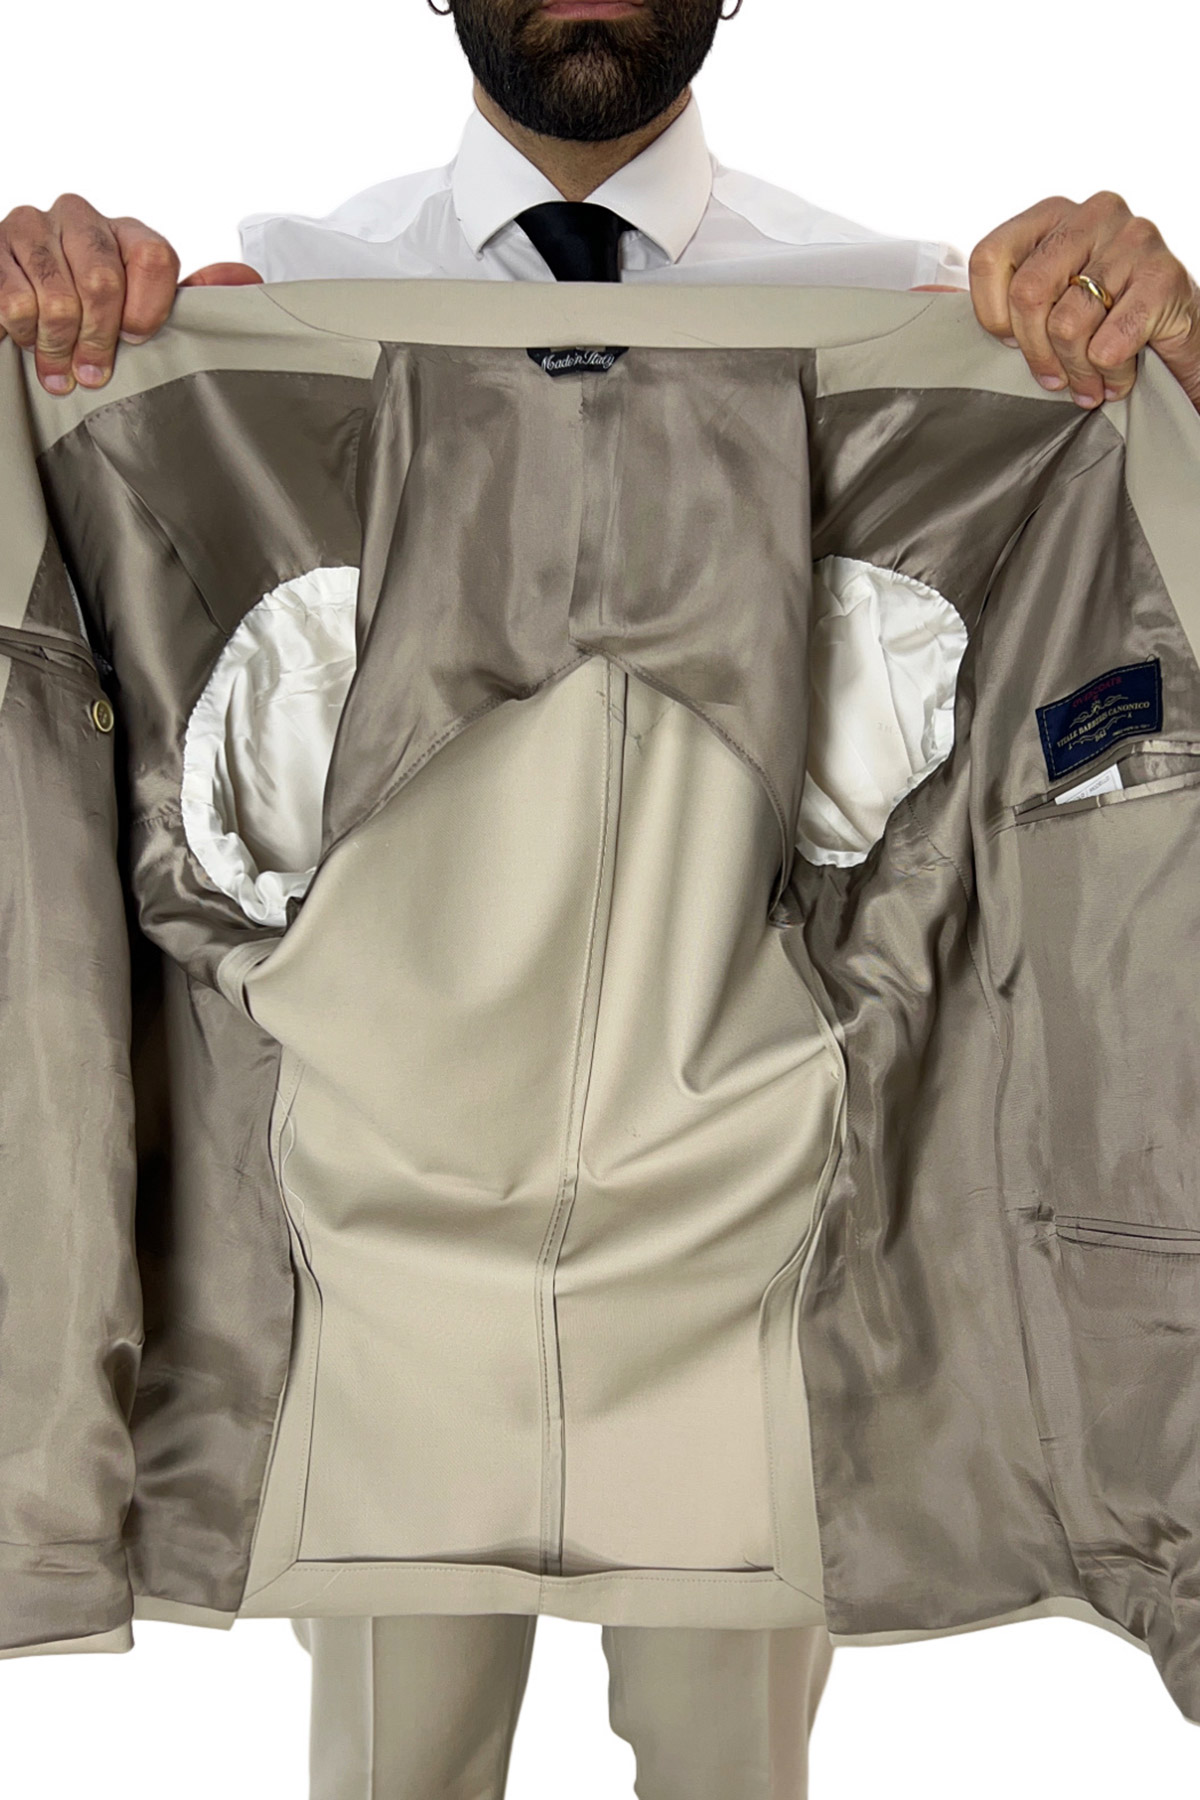 Abito uomo beige con giacca doppiopetto e pantalone slim fit in fresco lana super 130's Vitale Barberis Canonico